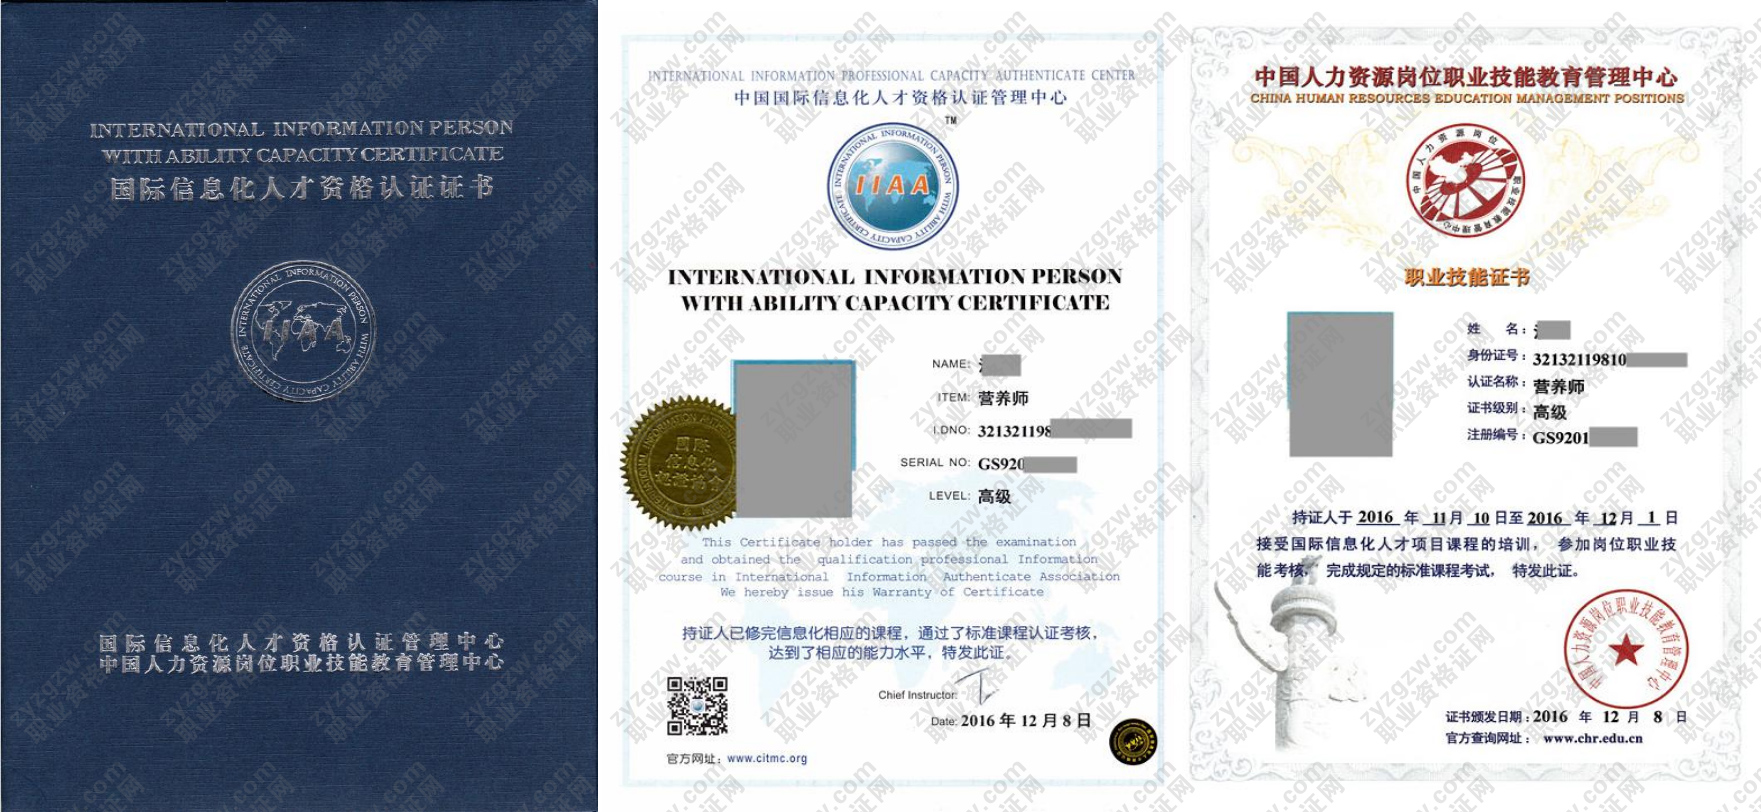 中国人力资源岗位职业技能教育管理中心 健身教练 国际信息化人才资格认证证书